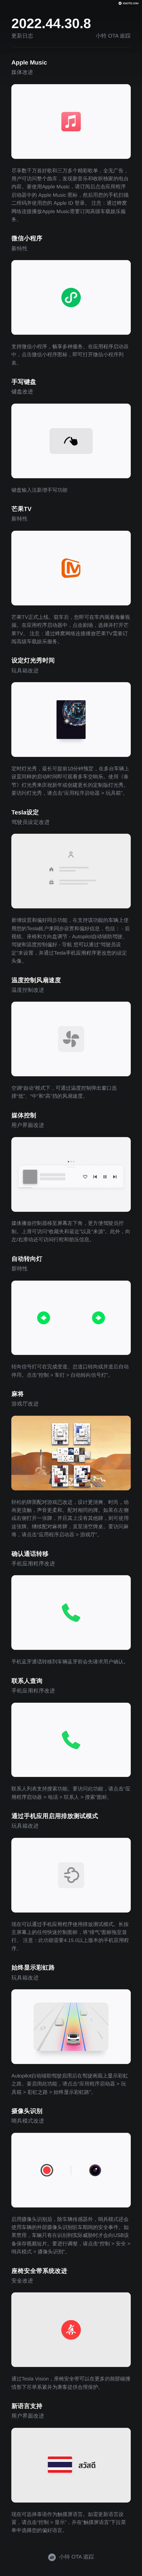 华为手机左下角图标:OTA升级 | 含Apple Music上线，特斯拉2022.44.30.8向中国用户推送